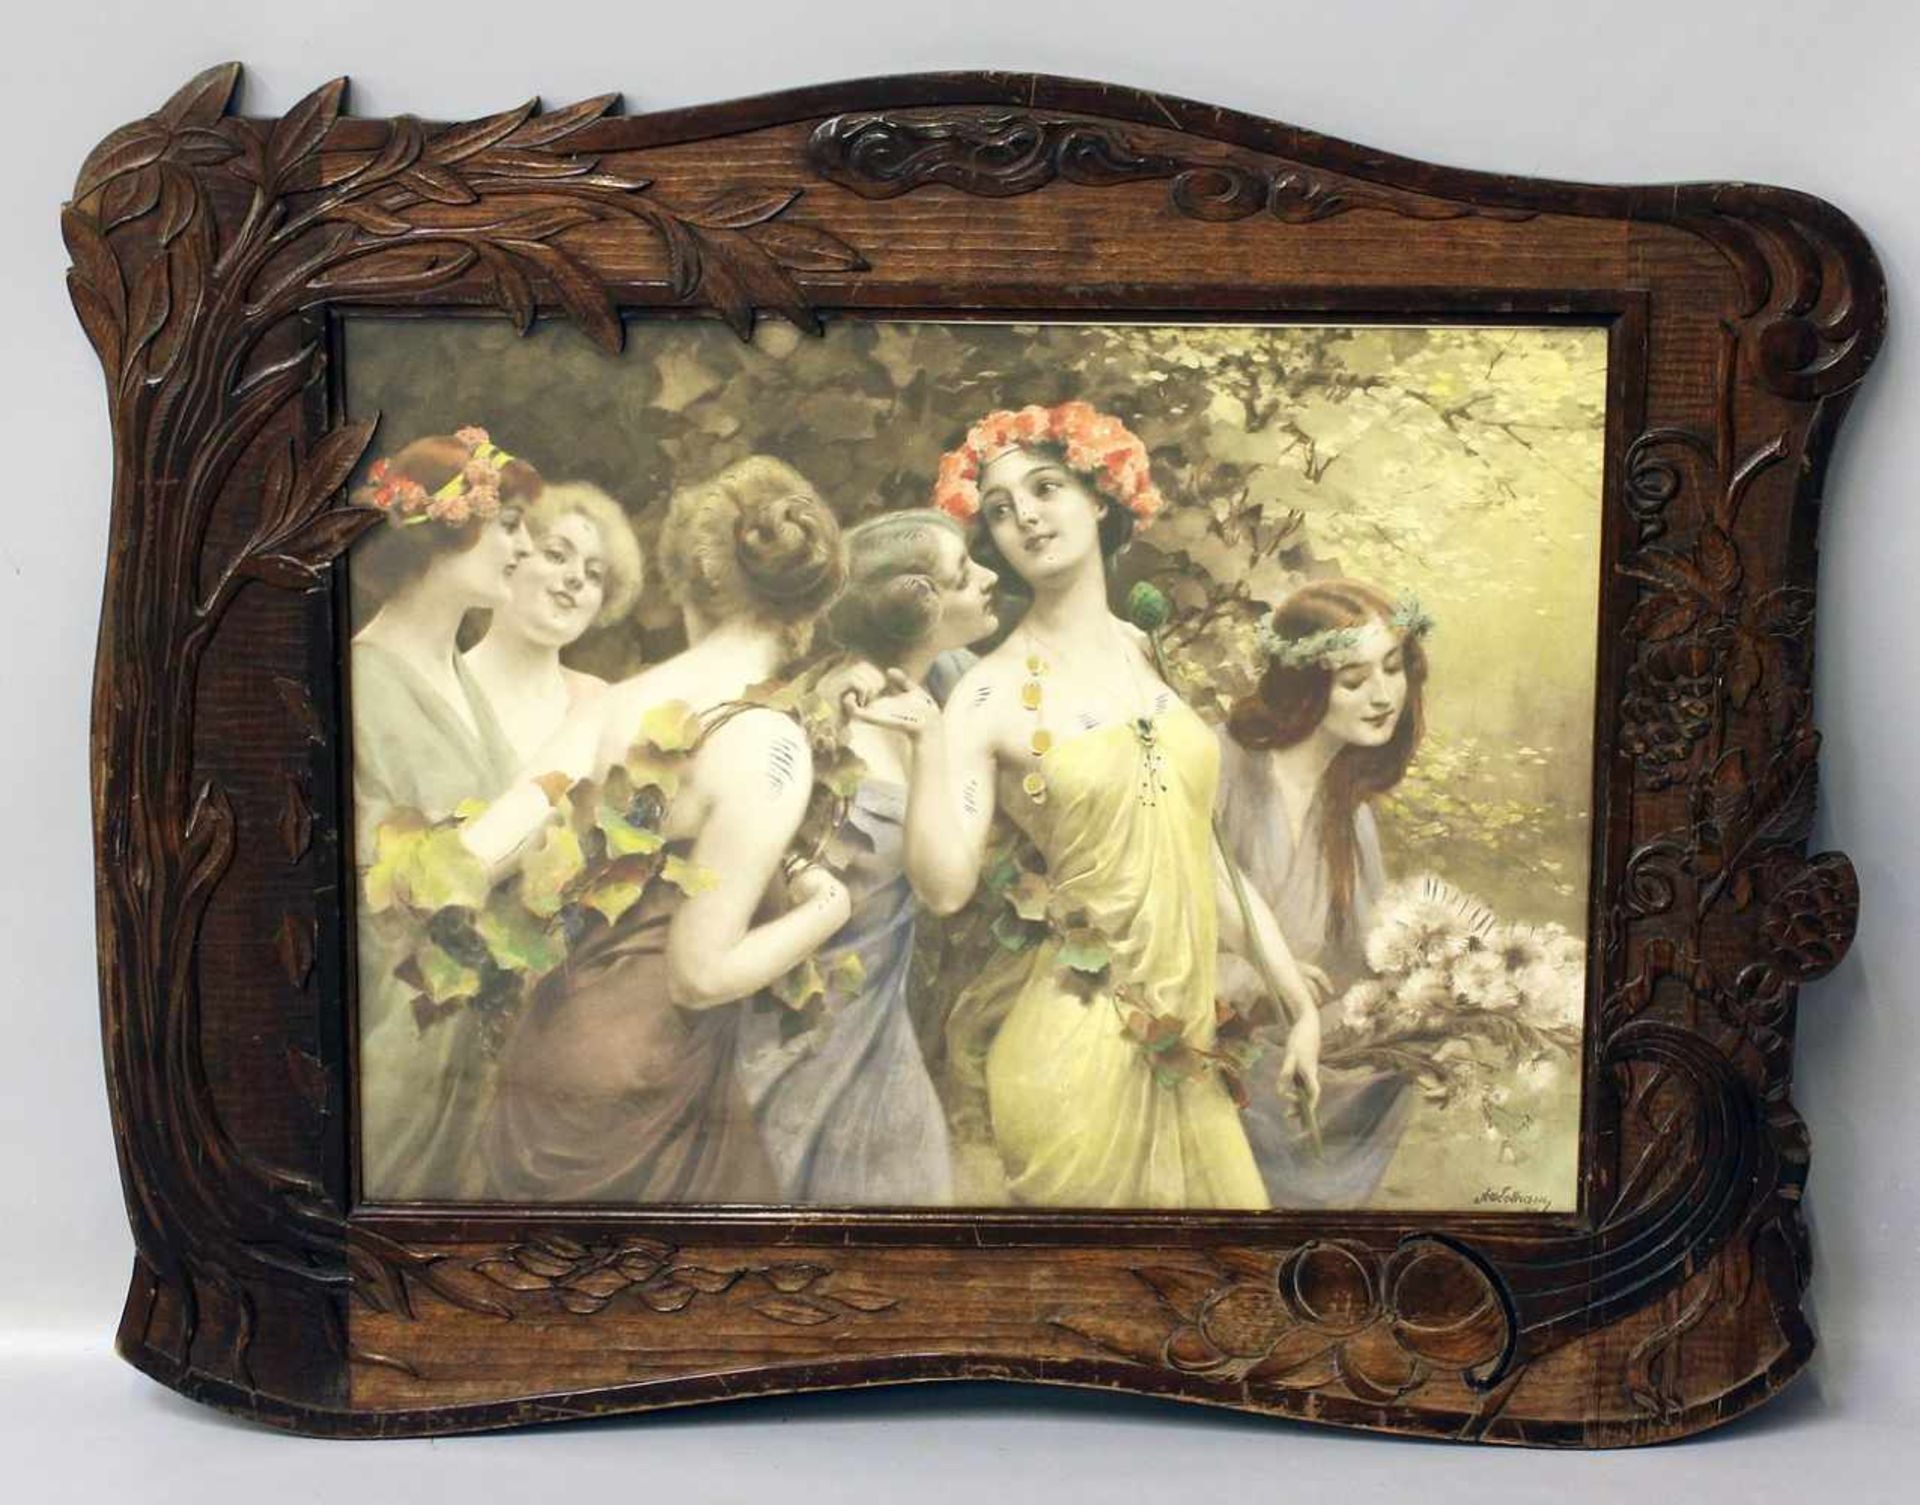 Verglaster Jugendstilrahmen (um 1900).Holz mit floraler Reliefschnitzerei. Gebrauchsspuren.